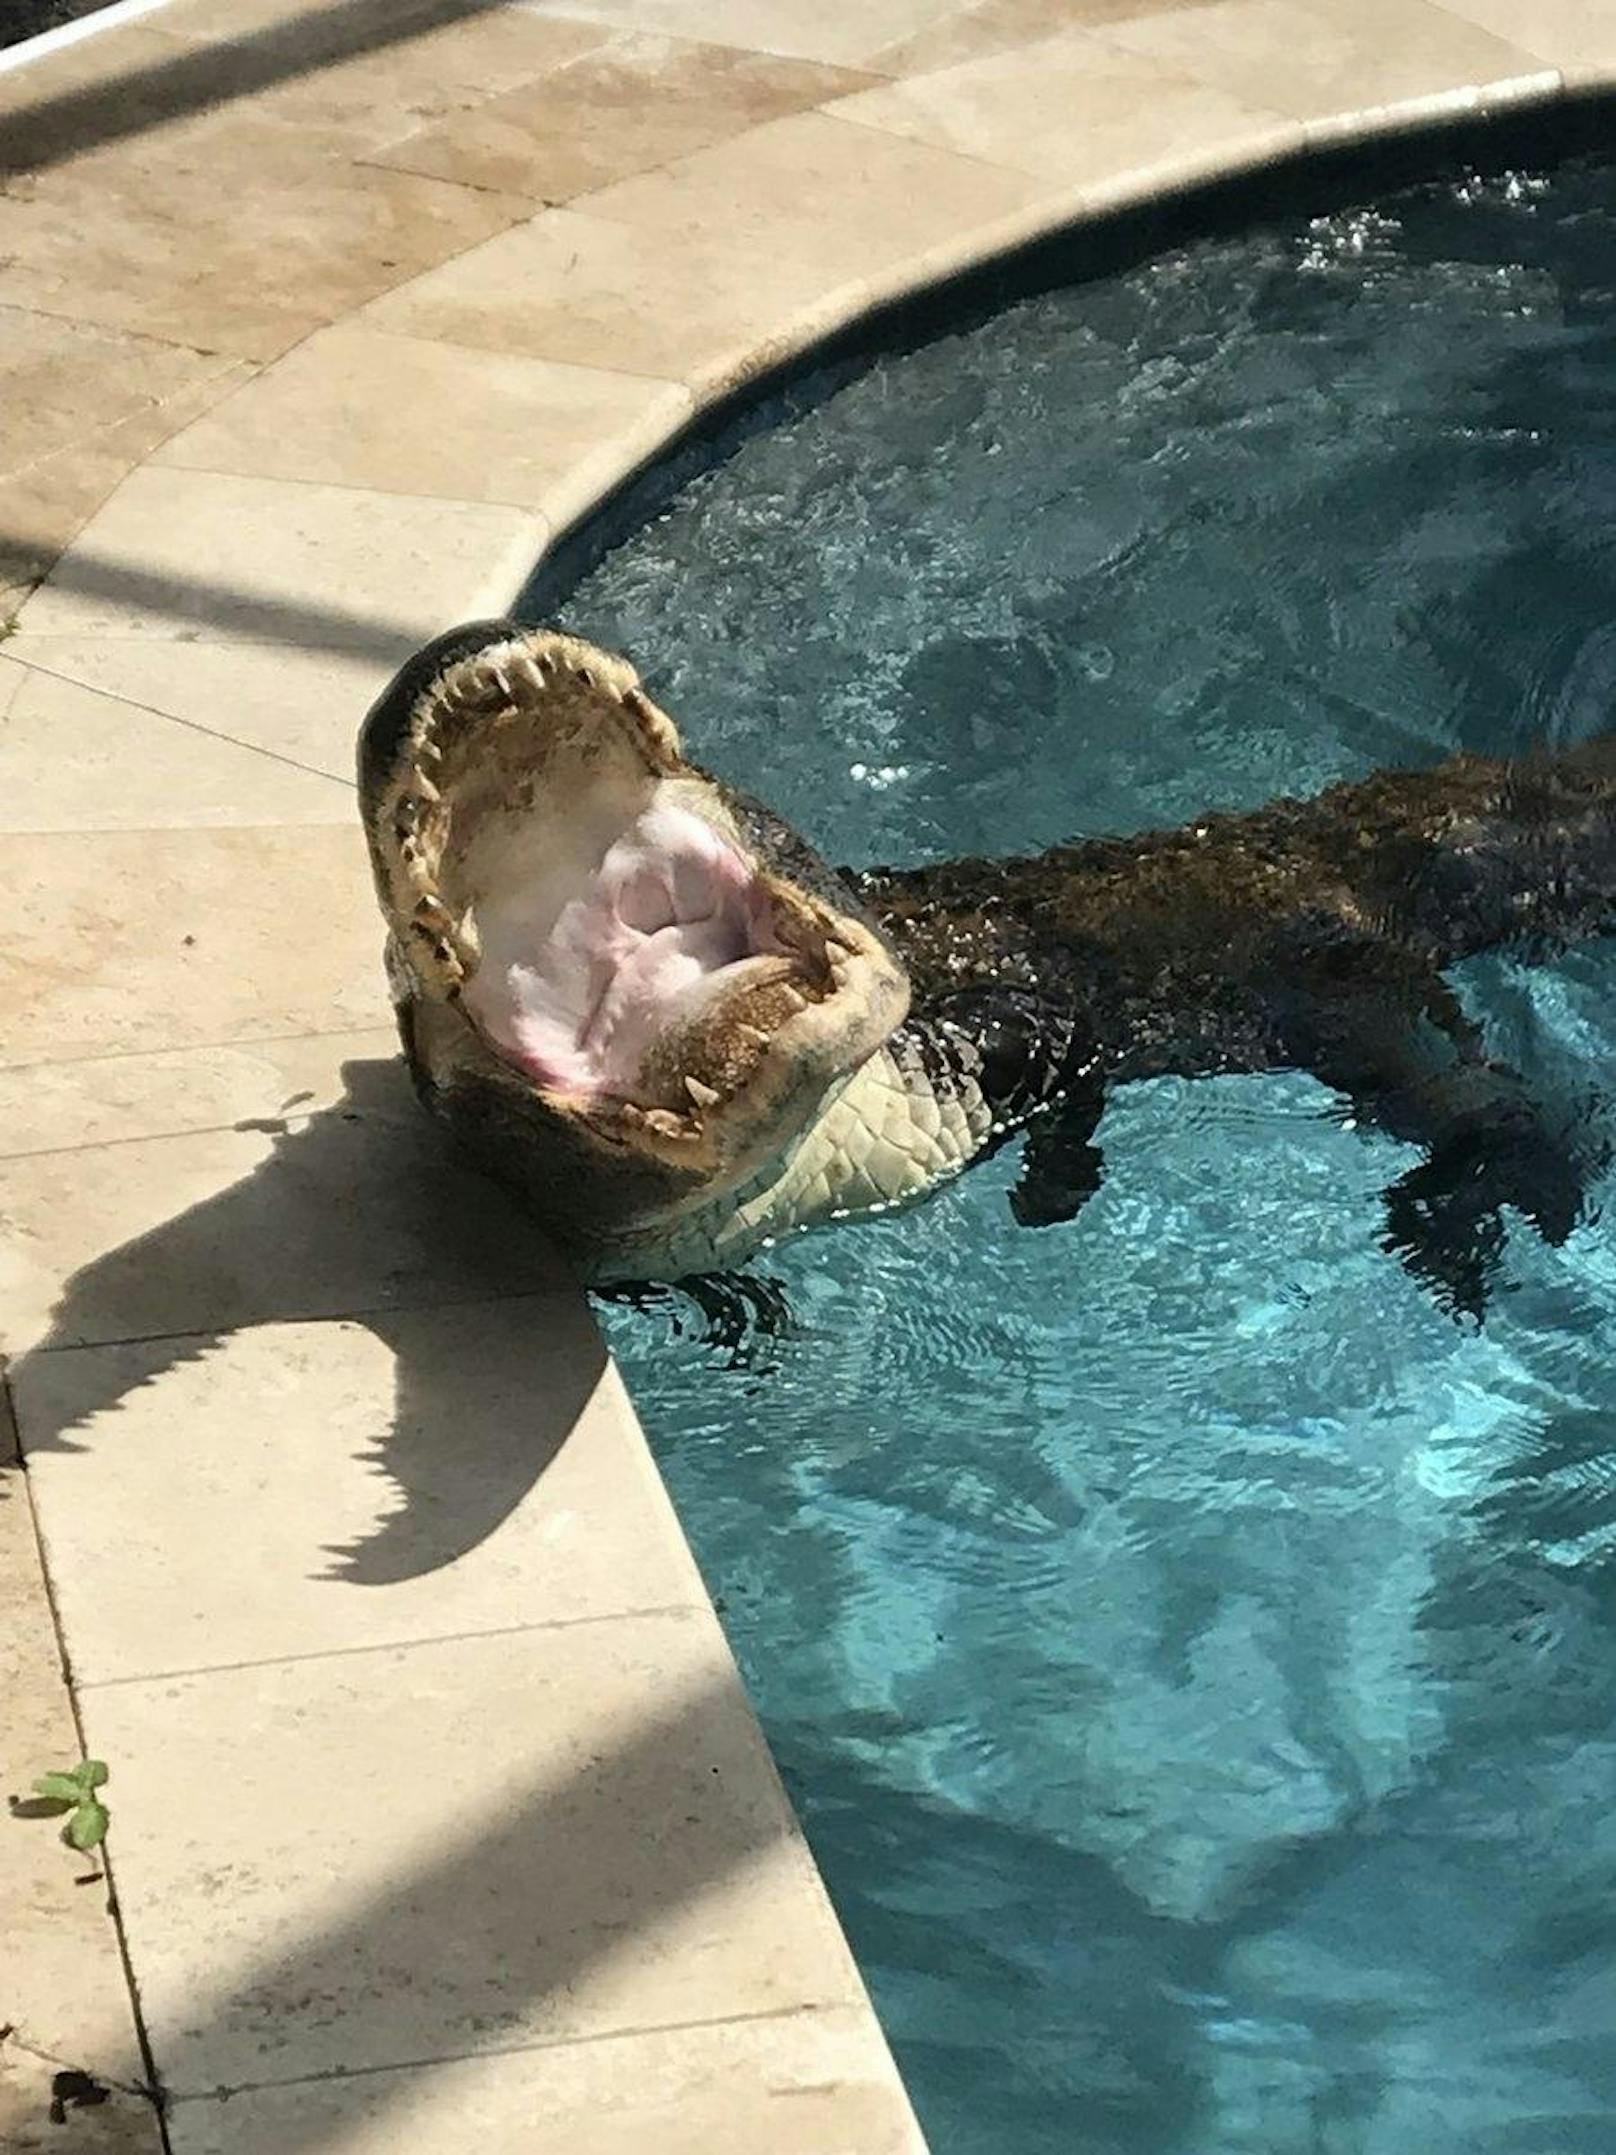 Ungemütliche Überraschung für eine Pensionistin nahe Tampa, Florida. Während dem Frühstück entdeckten sie einen 3-Meter-Alligator in ihrem Pool.